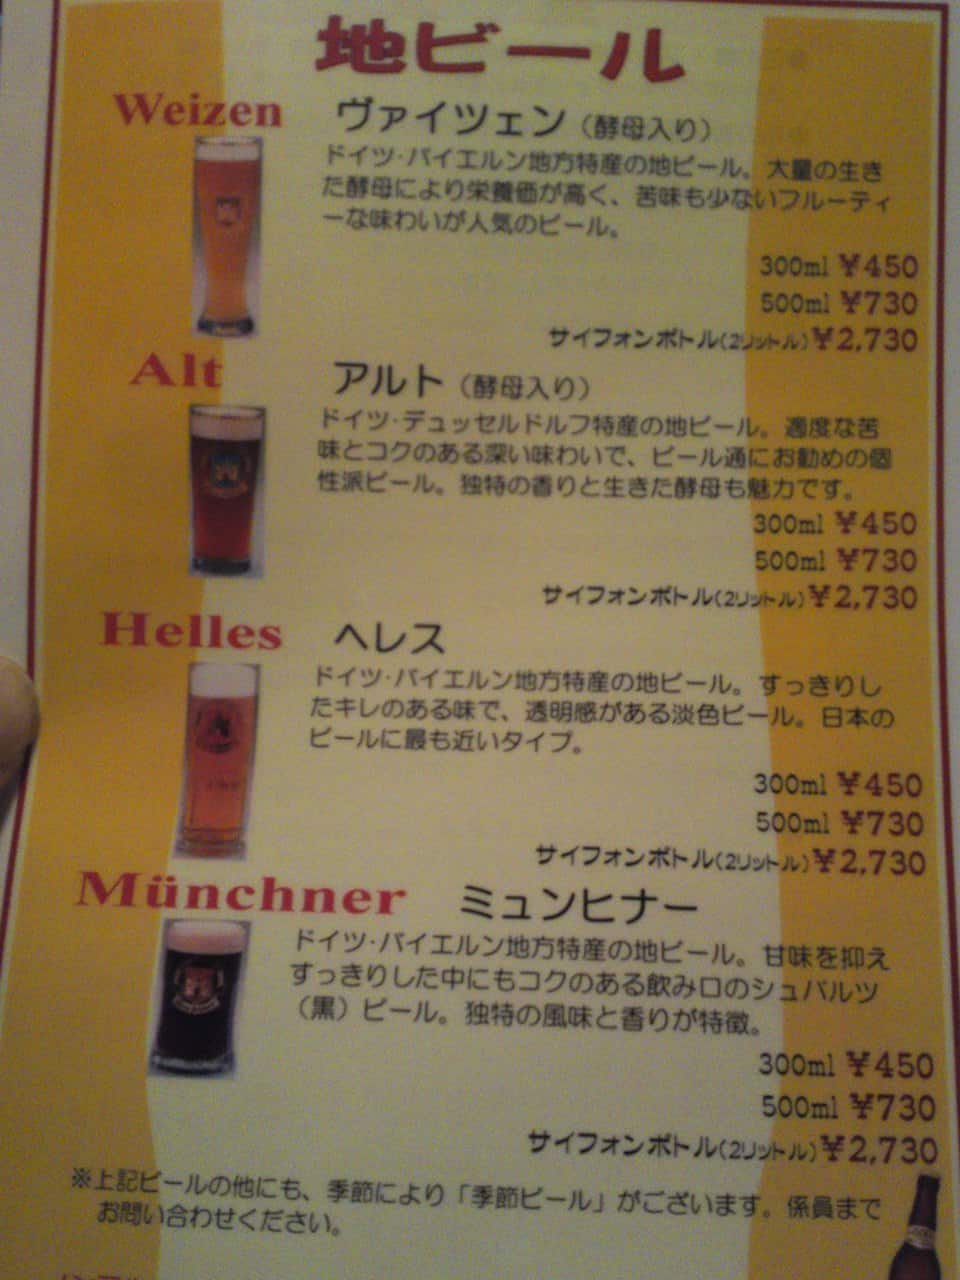 Beer,Brewery,Restaurant,Japan